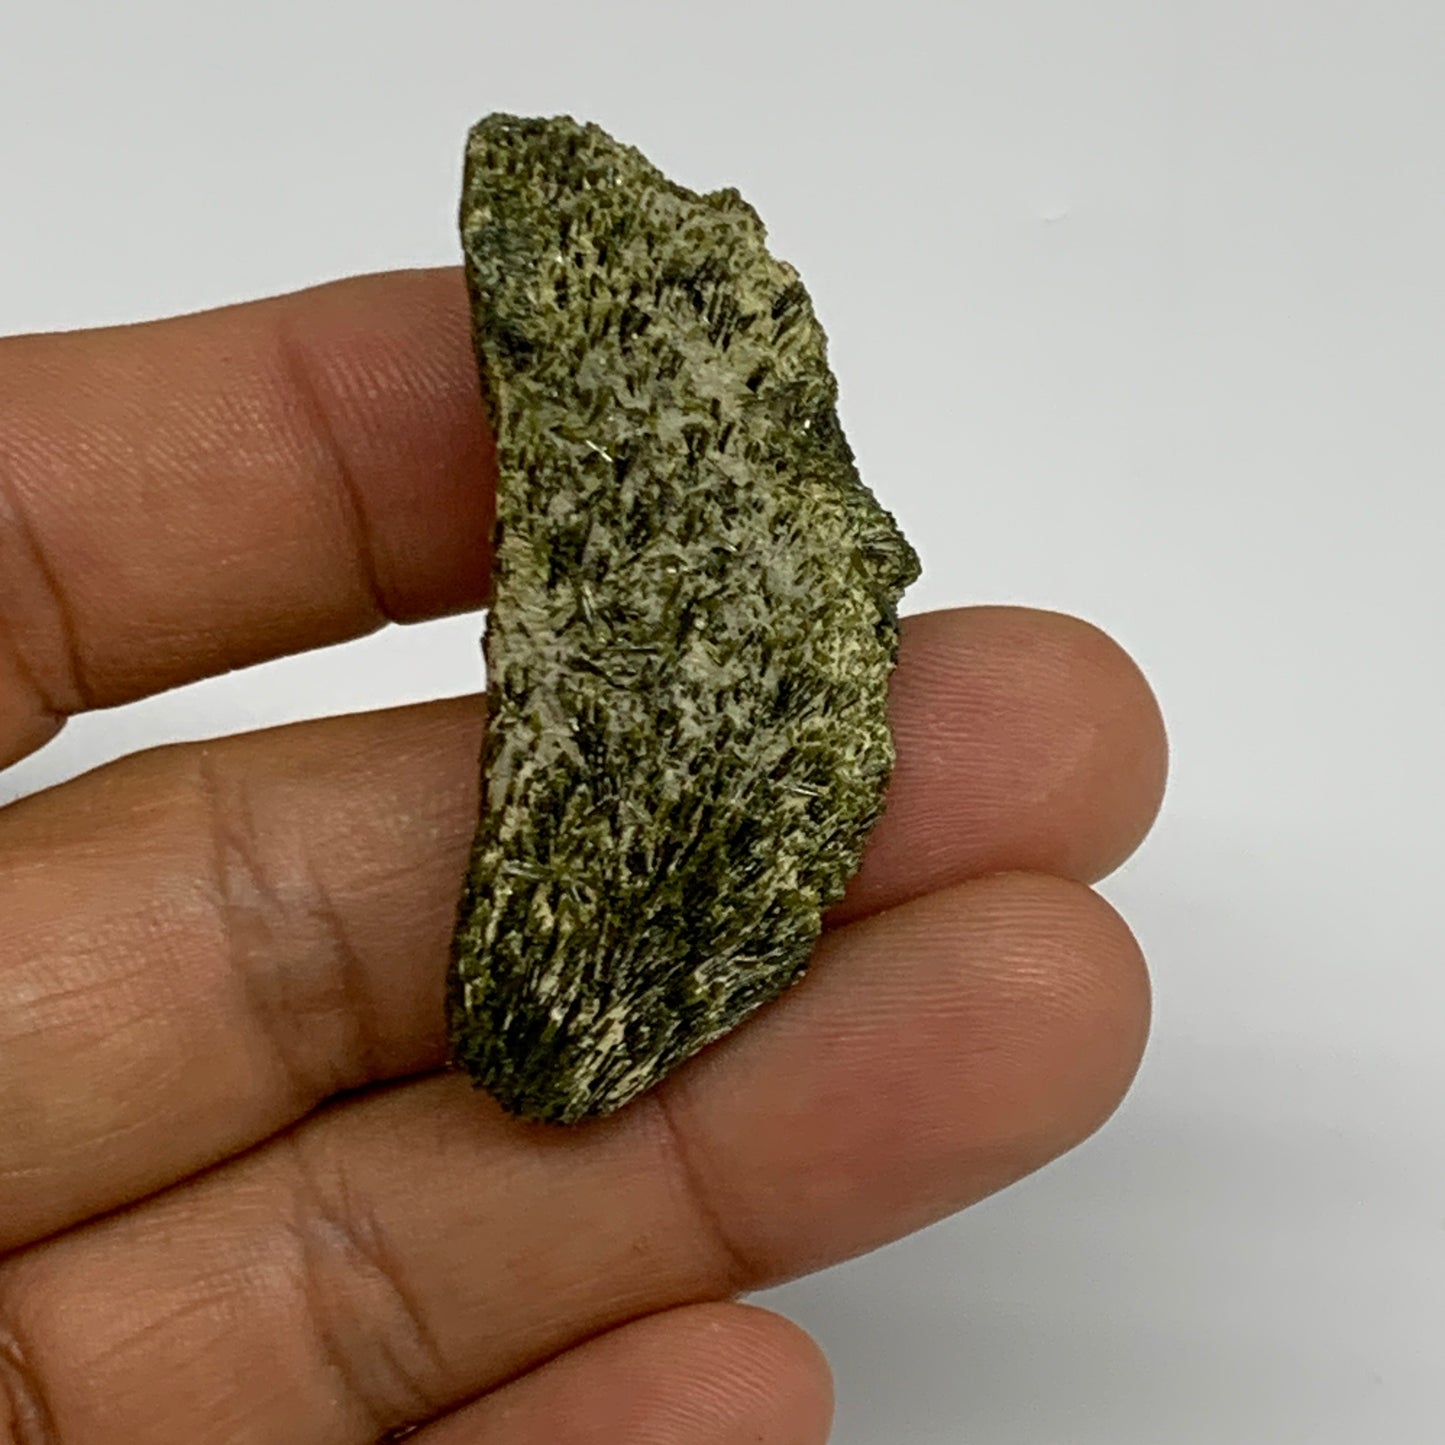 20.6g, 1.8"x0.8"x0.8",Green Epidote Custer/Leaf Mineral Specimen @Pakistan,B2757